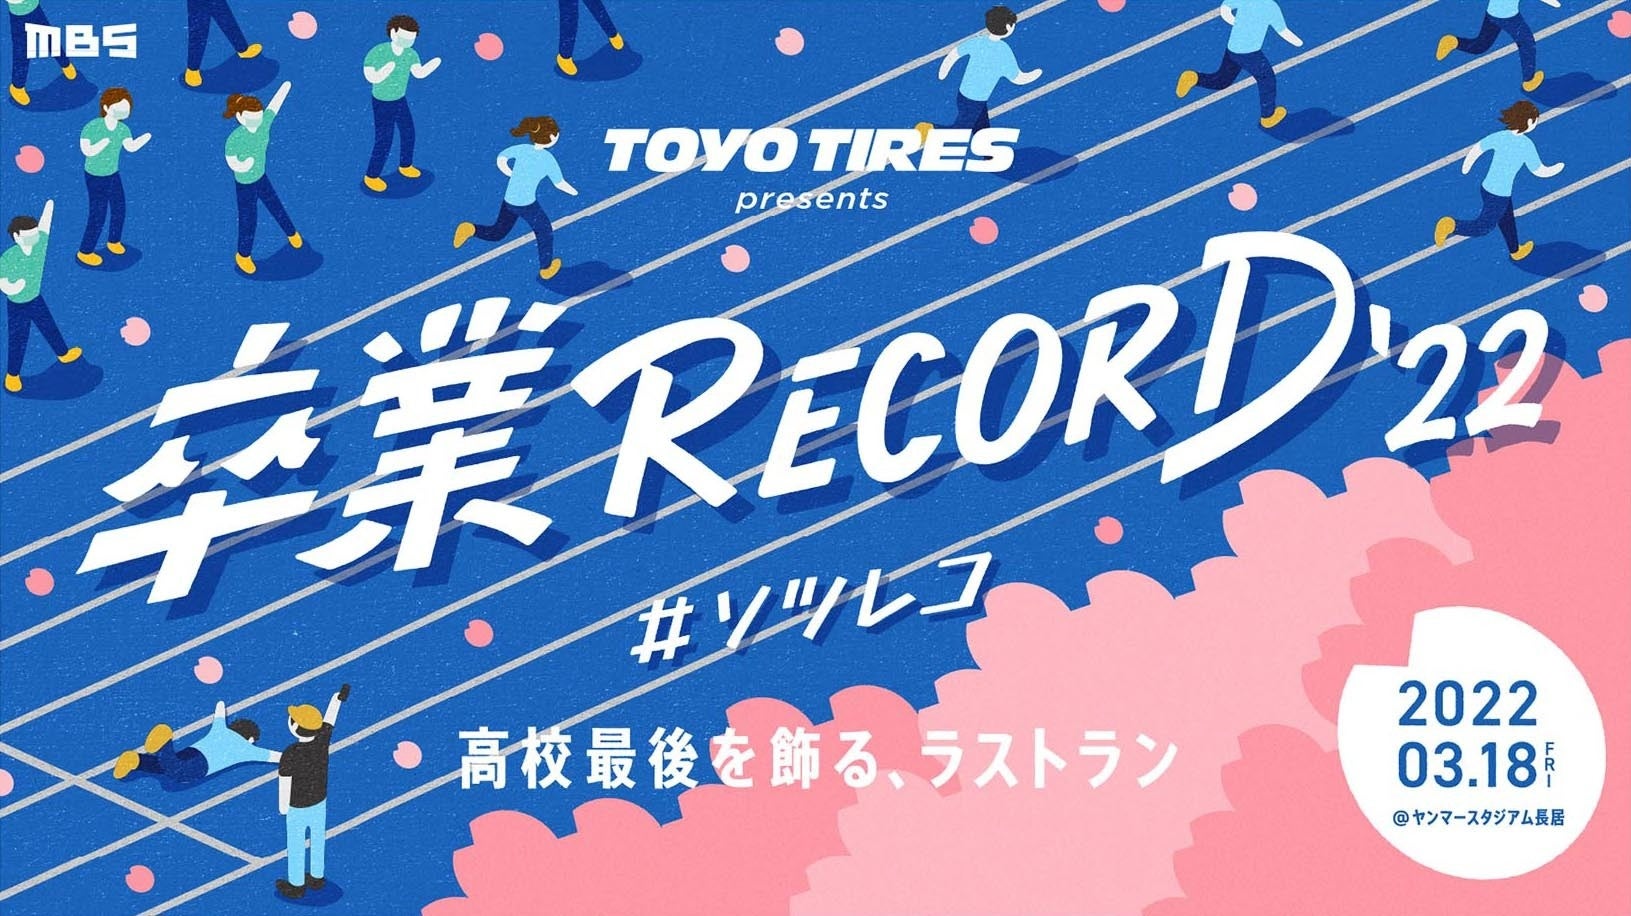 「卒業RECORD’22 #ソツレコ」にユカシカドが協賛